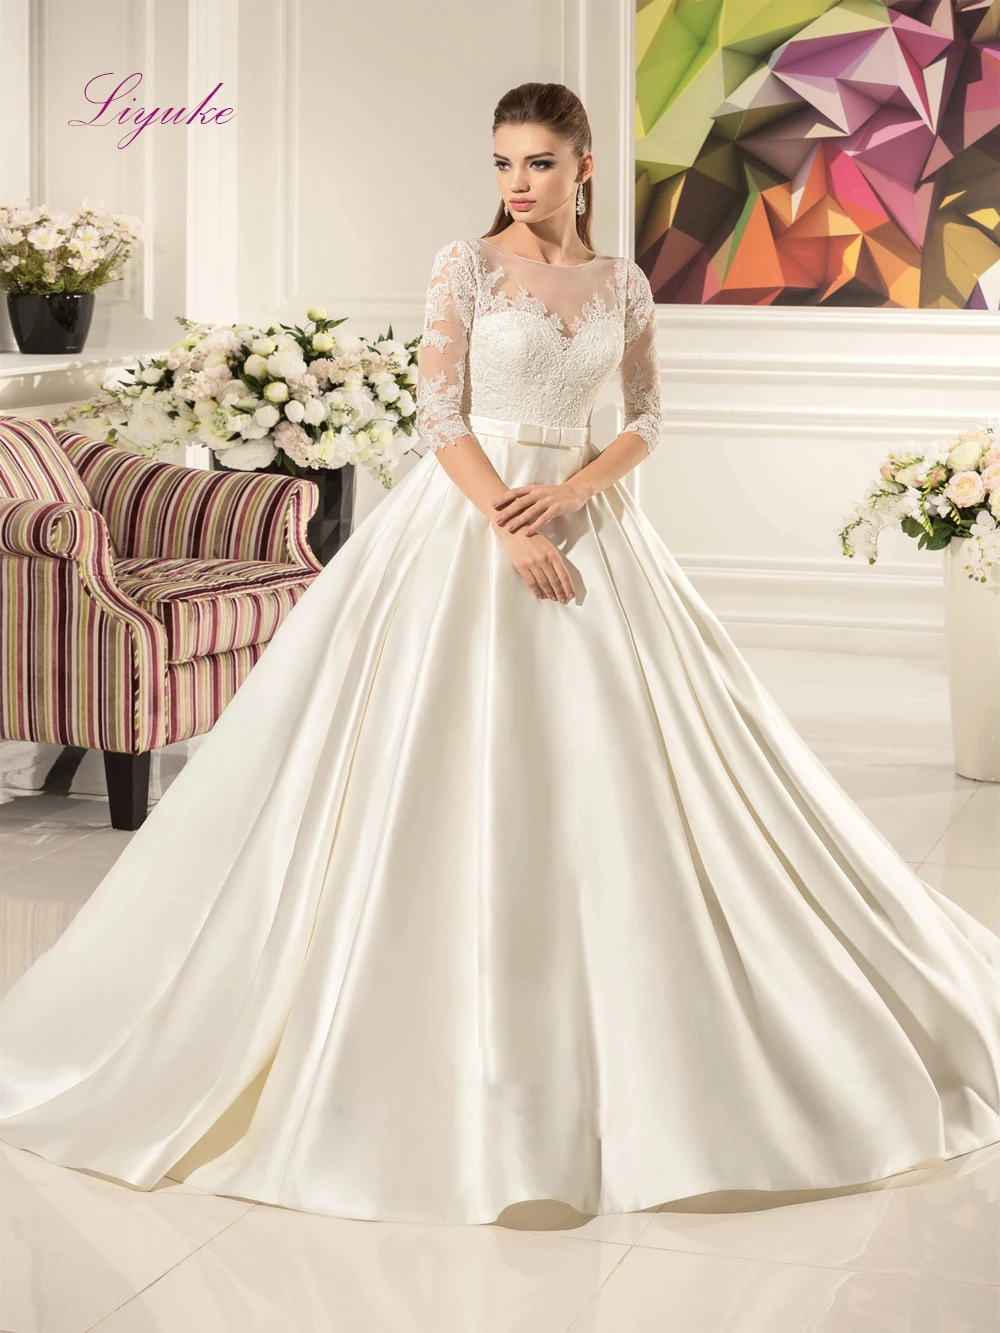 Liyuke A Line Forge свадебное платье 2019 Белый подъюбник для девочек в цветочек вуаль брак клиент сделал размер бесплатная доставка